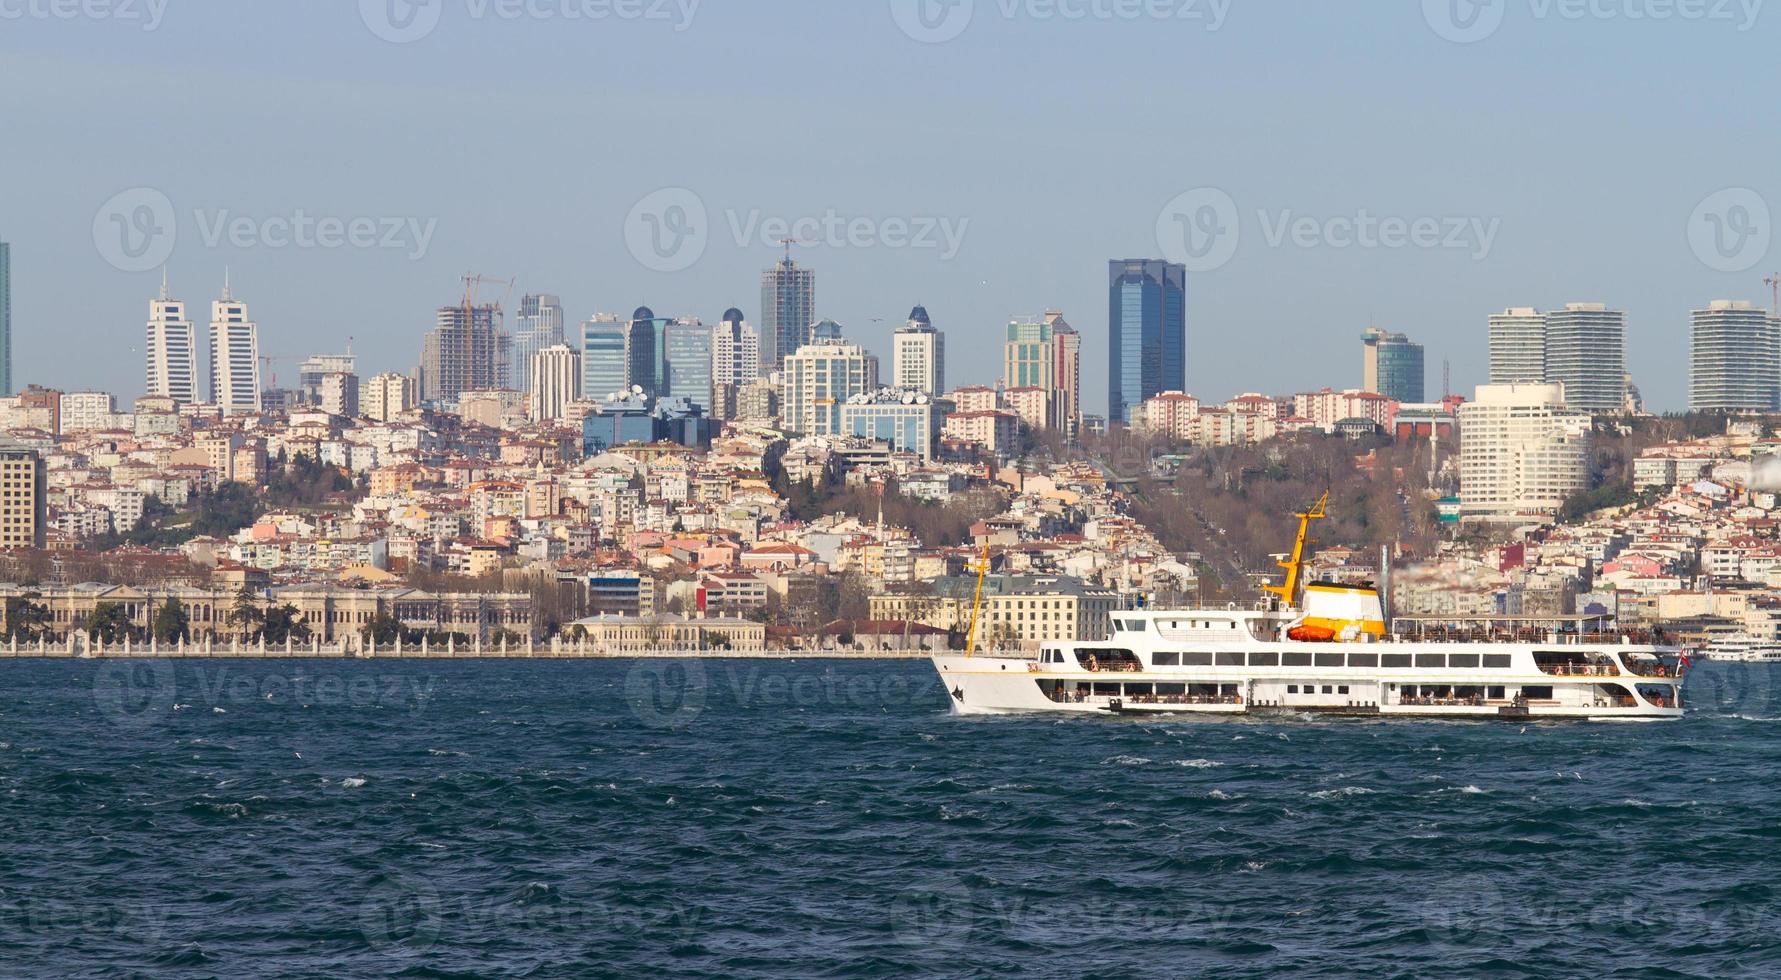 bosporus, istanbul, türkei foto